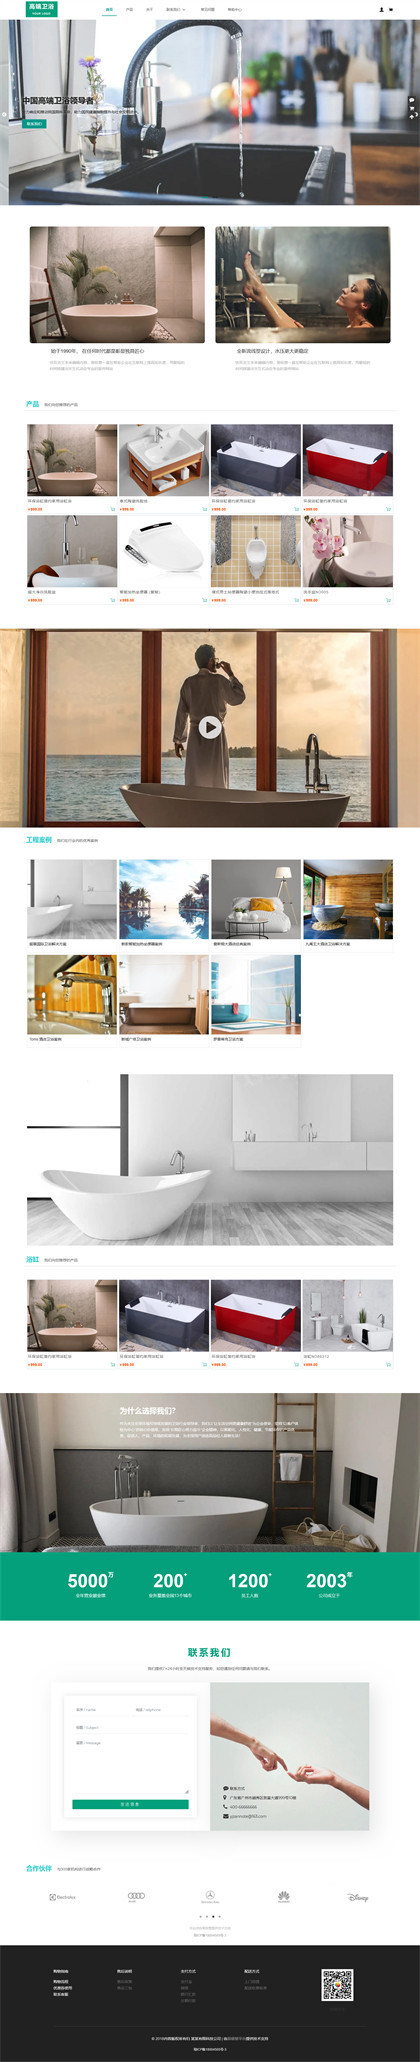 五金卫浴-厨卫用品-卫浴用品-建材用品-浴缸-洗手盆商城网站模板网站模板预览图片